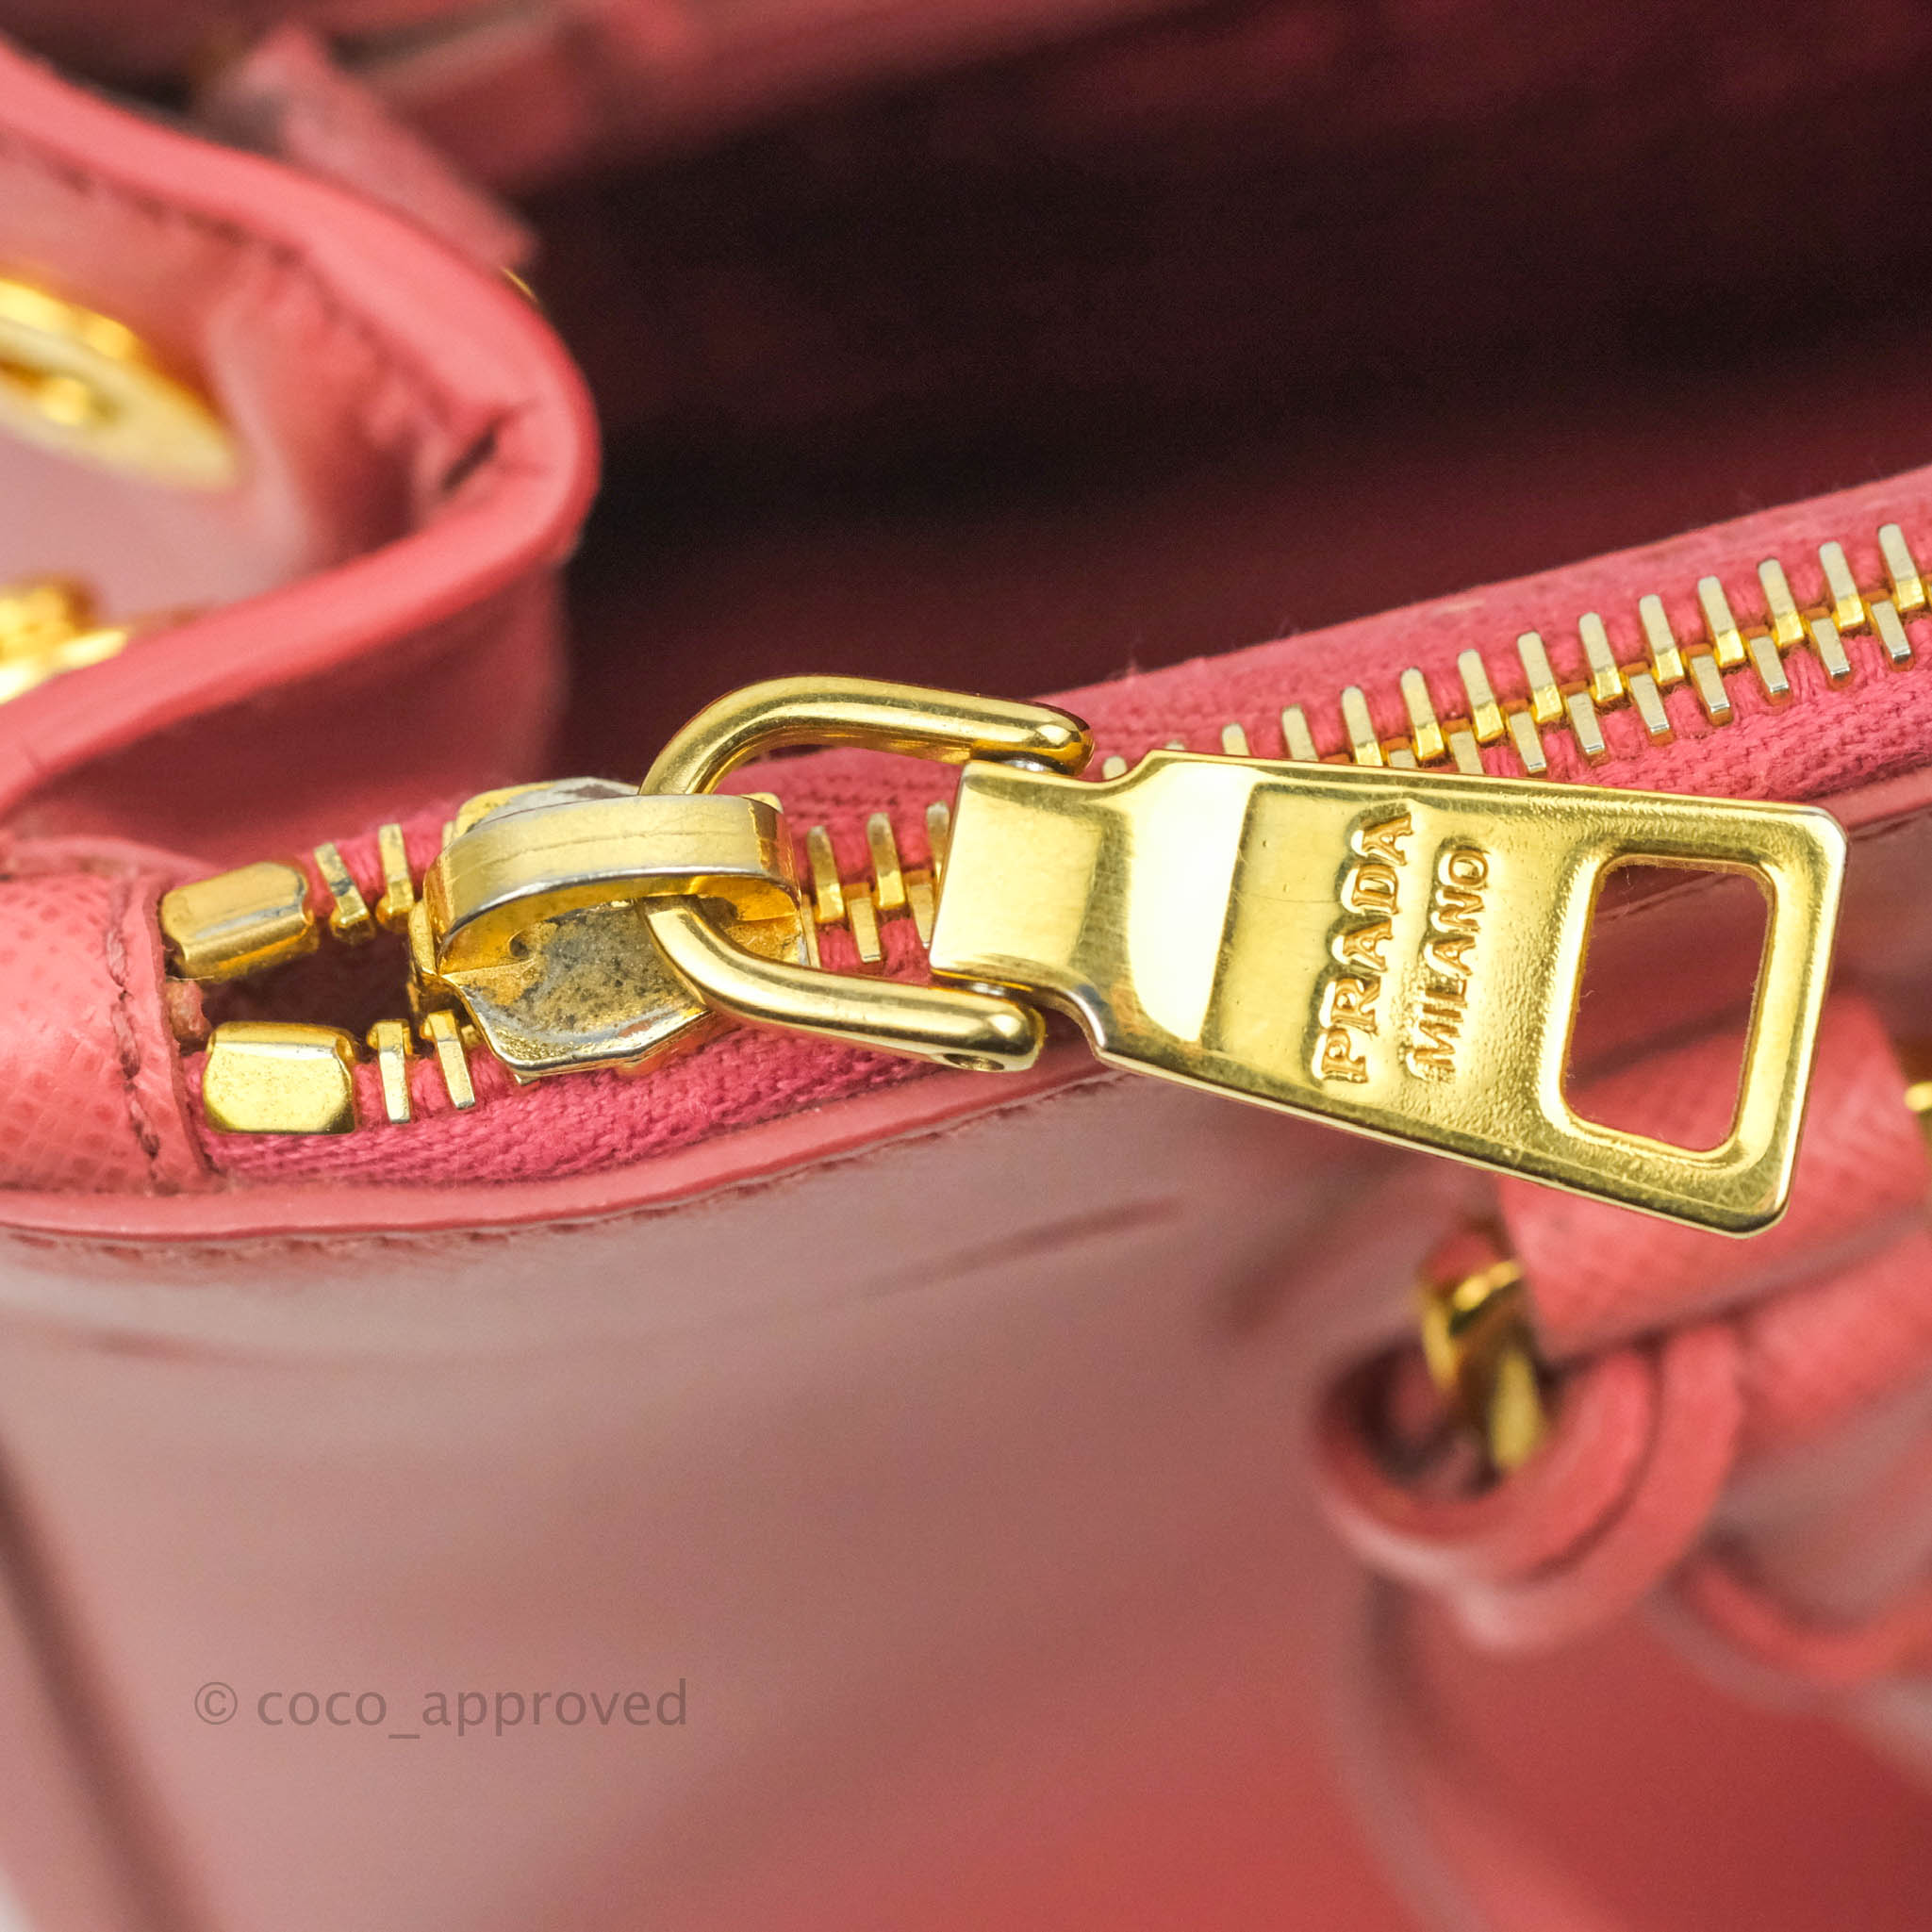 Prada Pink Lux Galleria Nano Crossbody Bag – The Closet